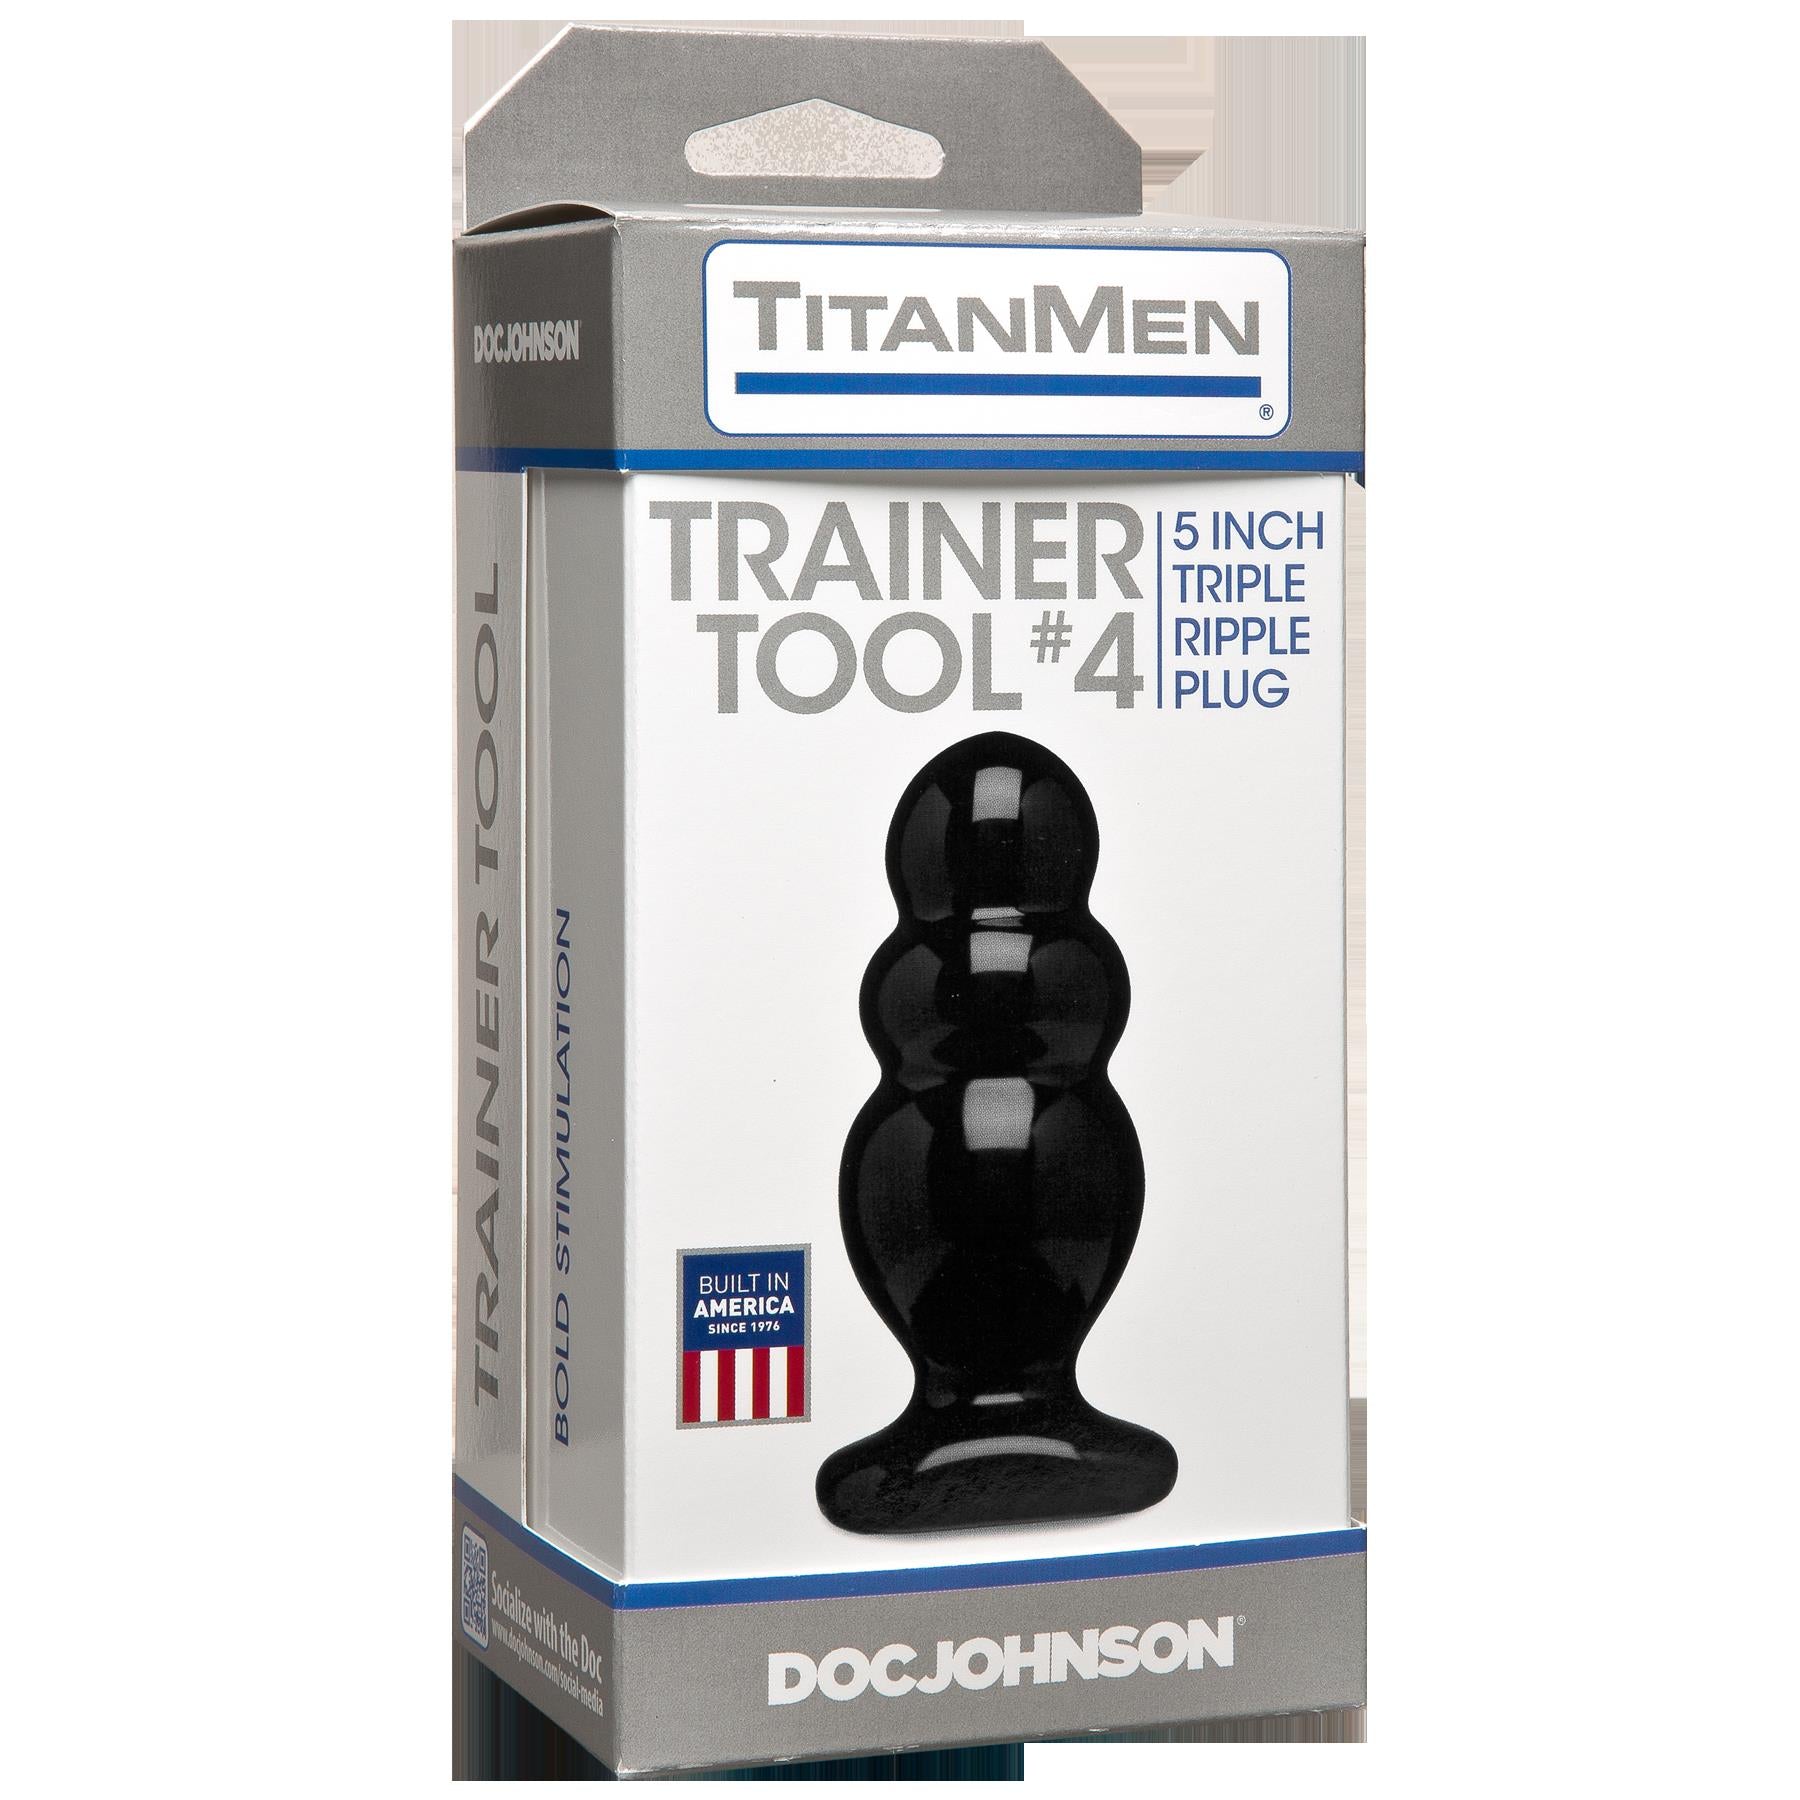 Titanmen Tool - Trainer 